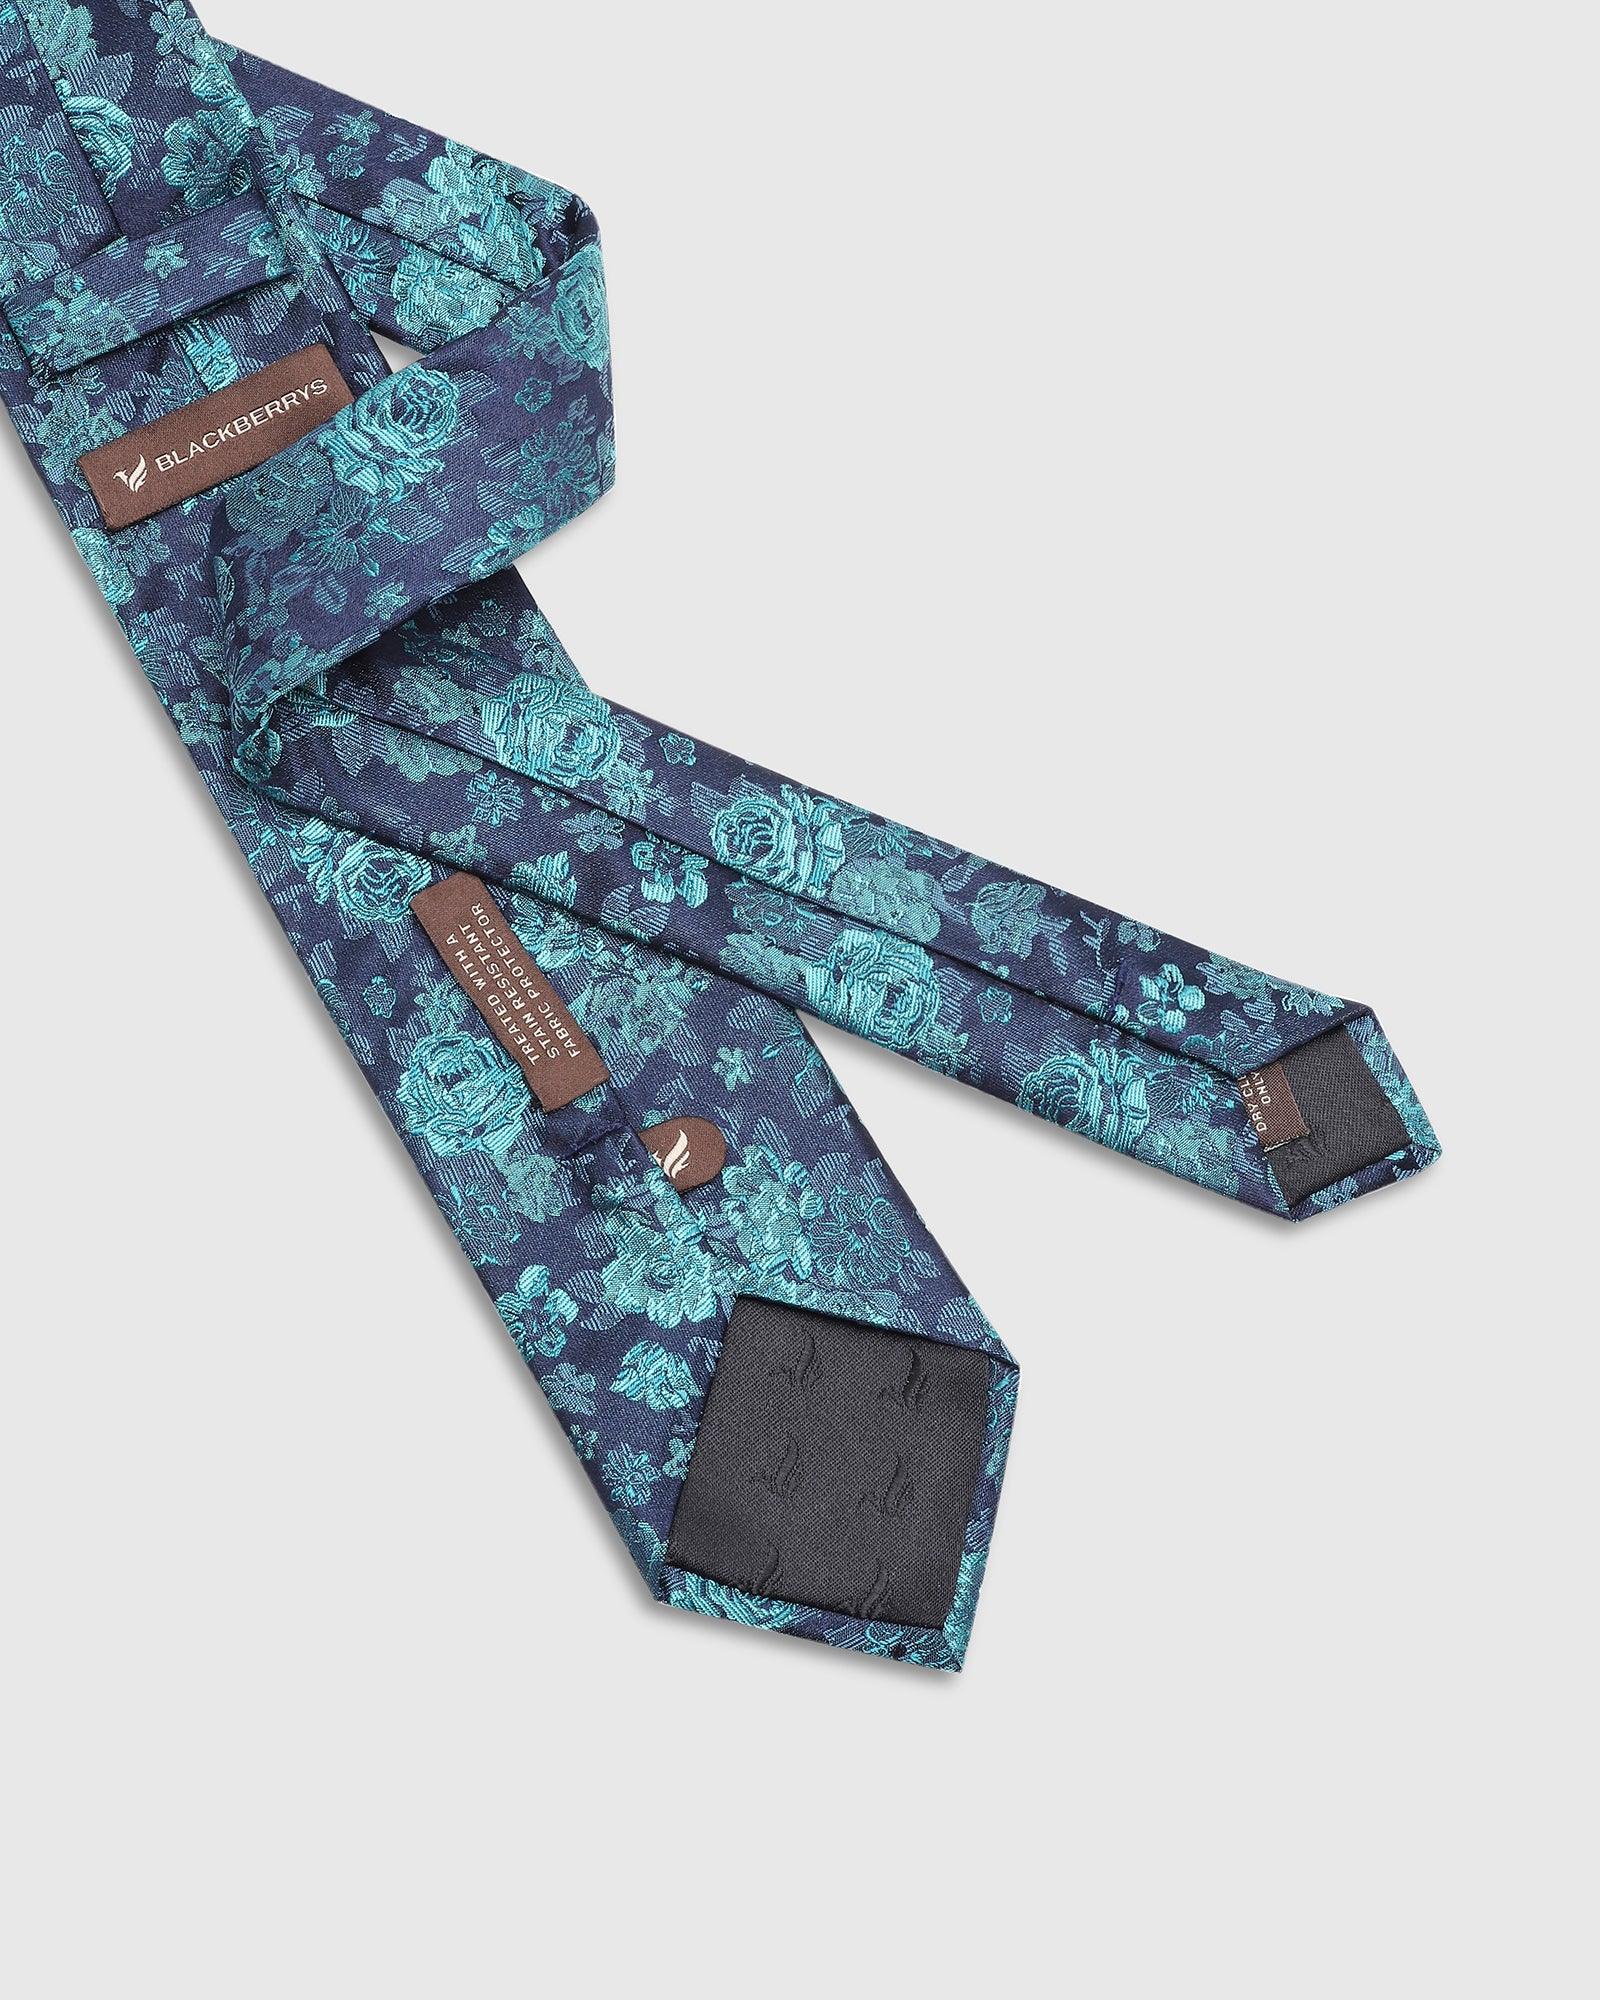 Printed Tie In Teal (Tucker) - Blackberrys